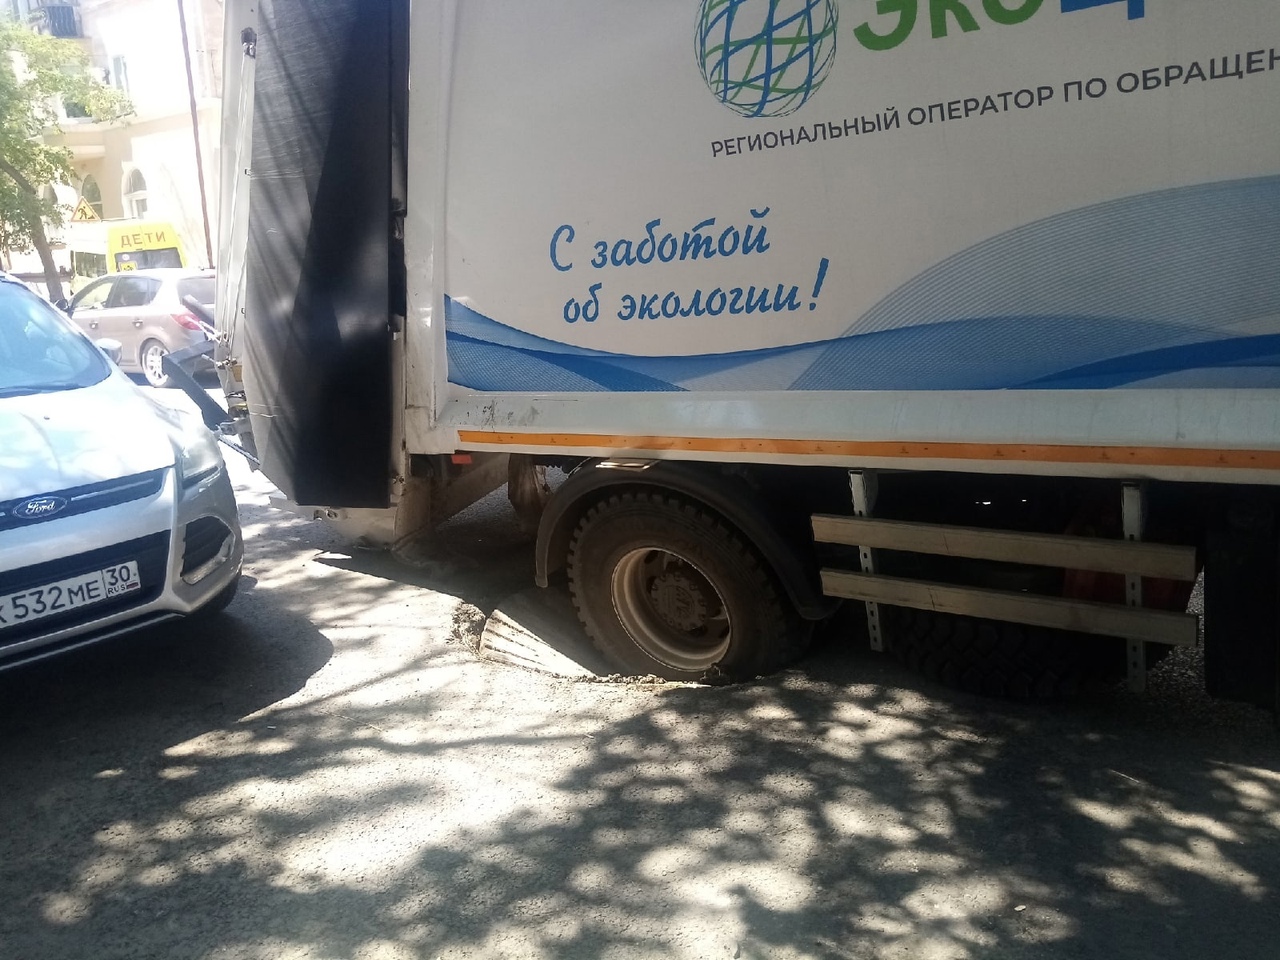 Ремонт еще не закончен: администрация объяснила провал грузовика на Волжской